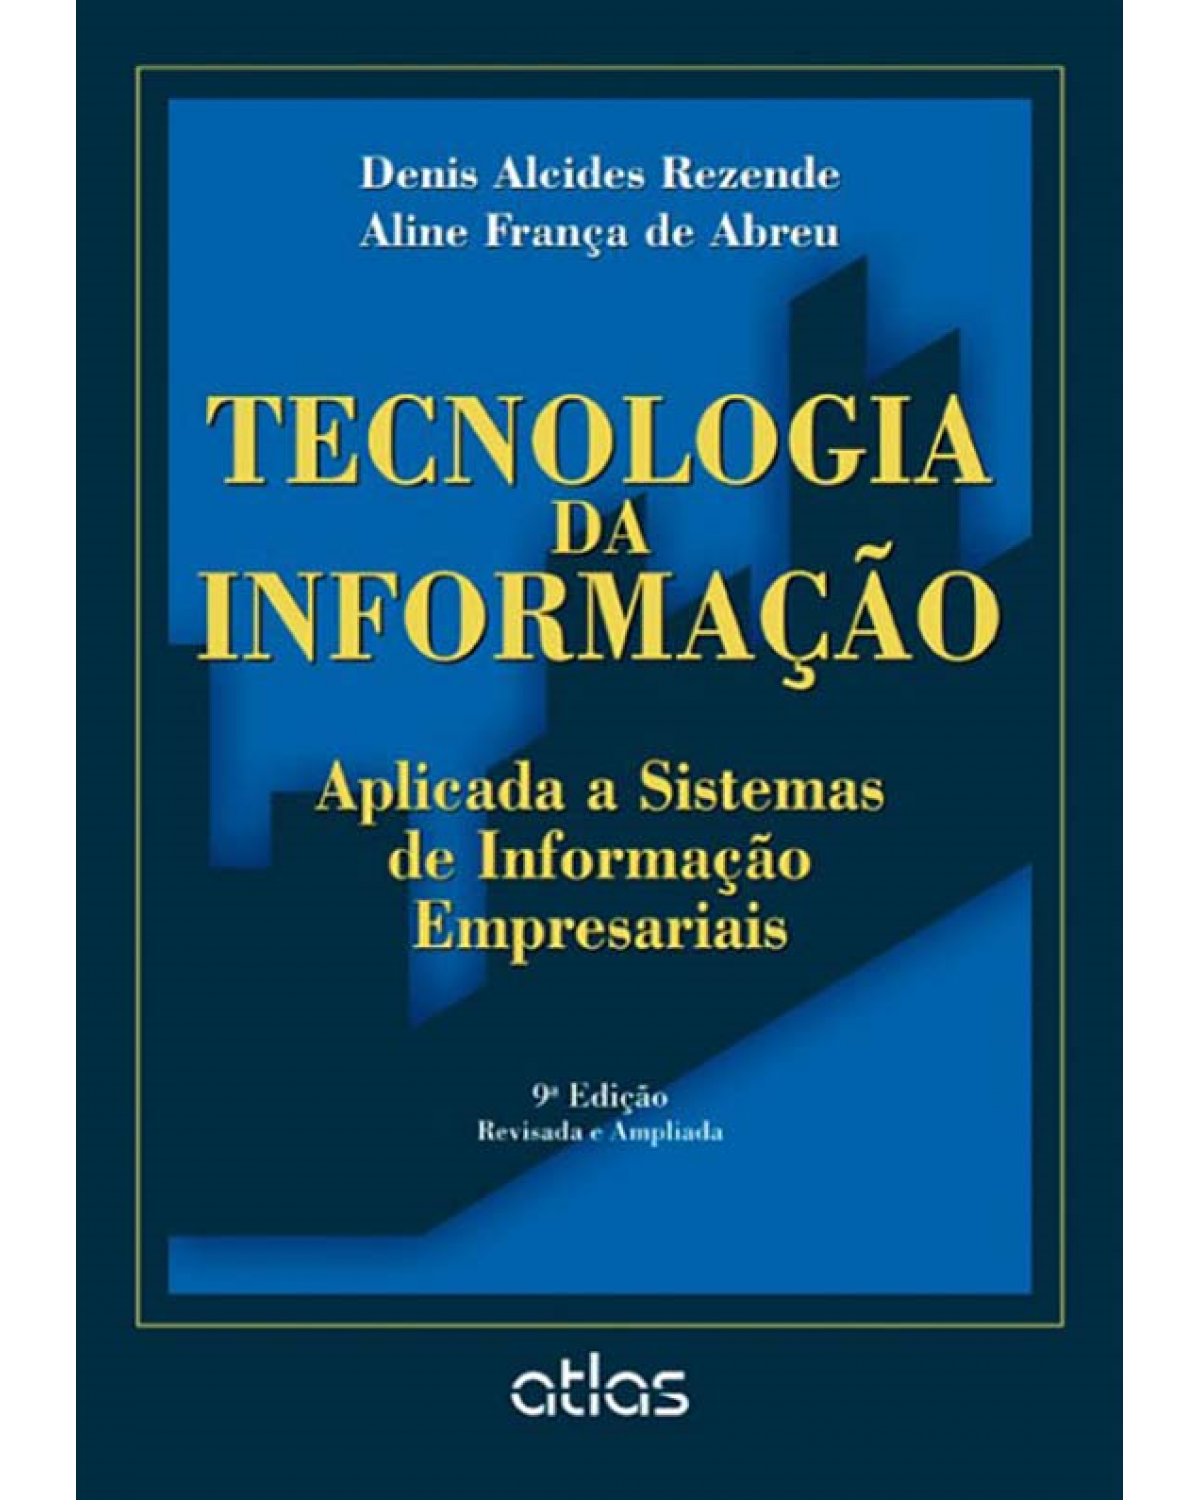 Tecnologia da informação aplicada a sistemas de informação empresariais - 9ª Edição | 2013